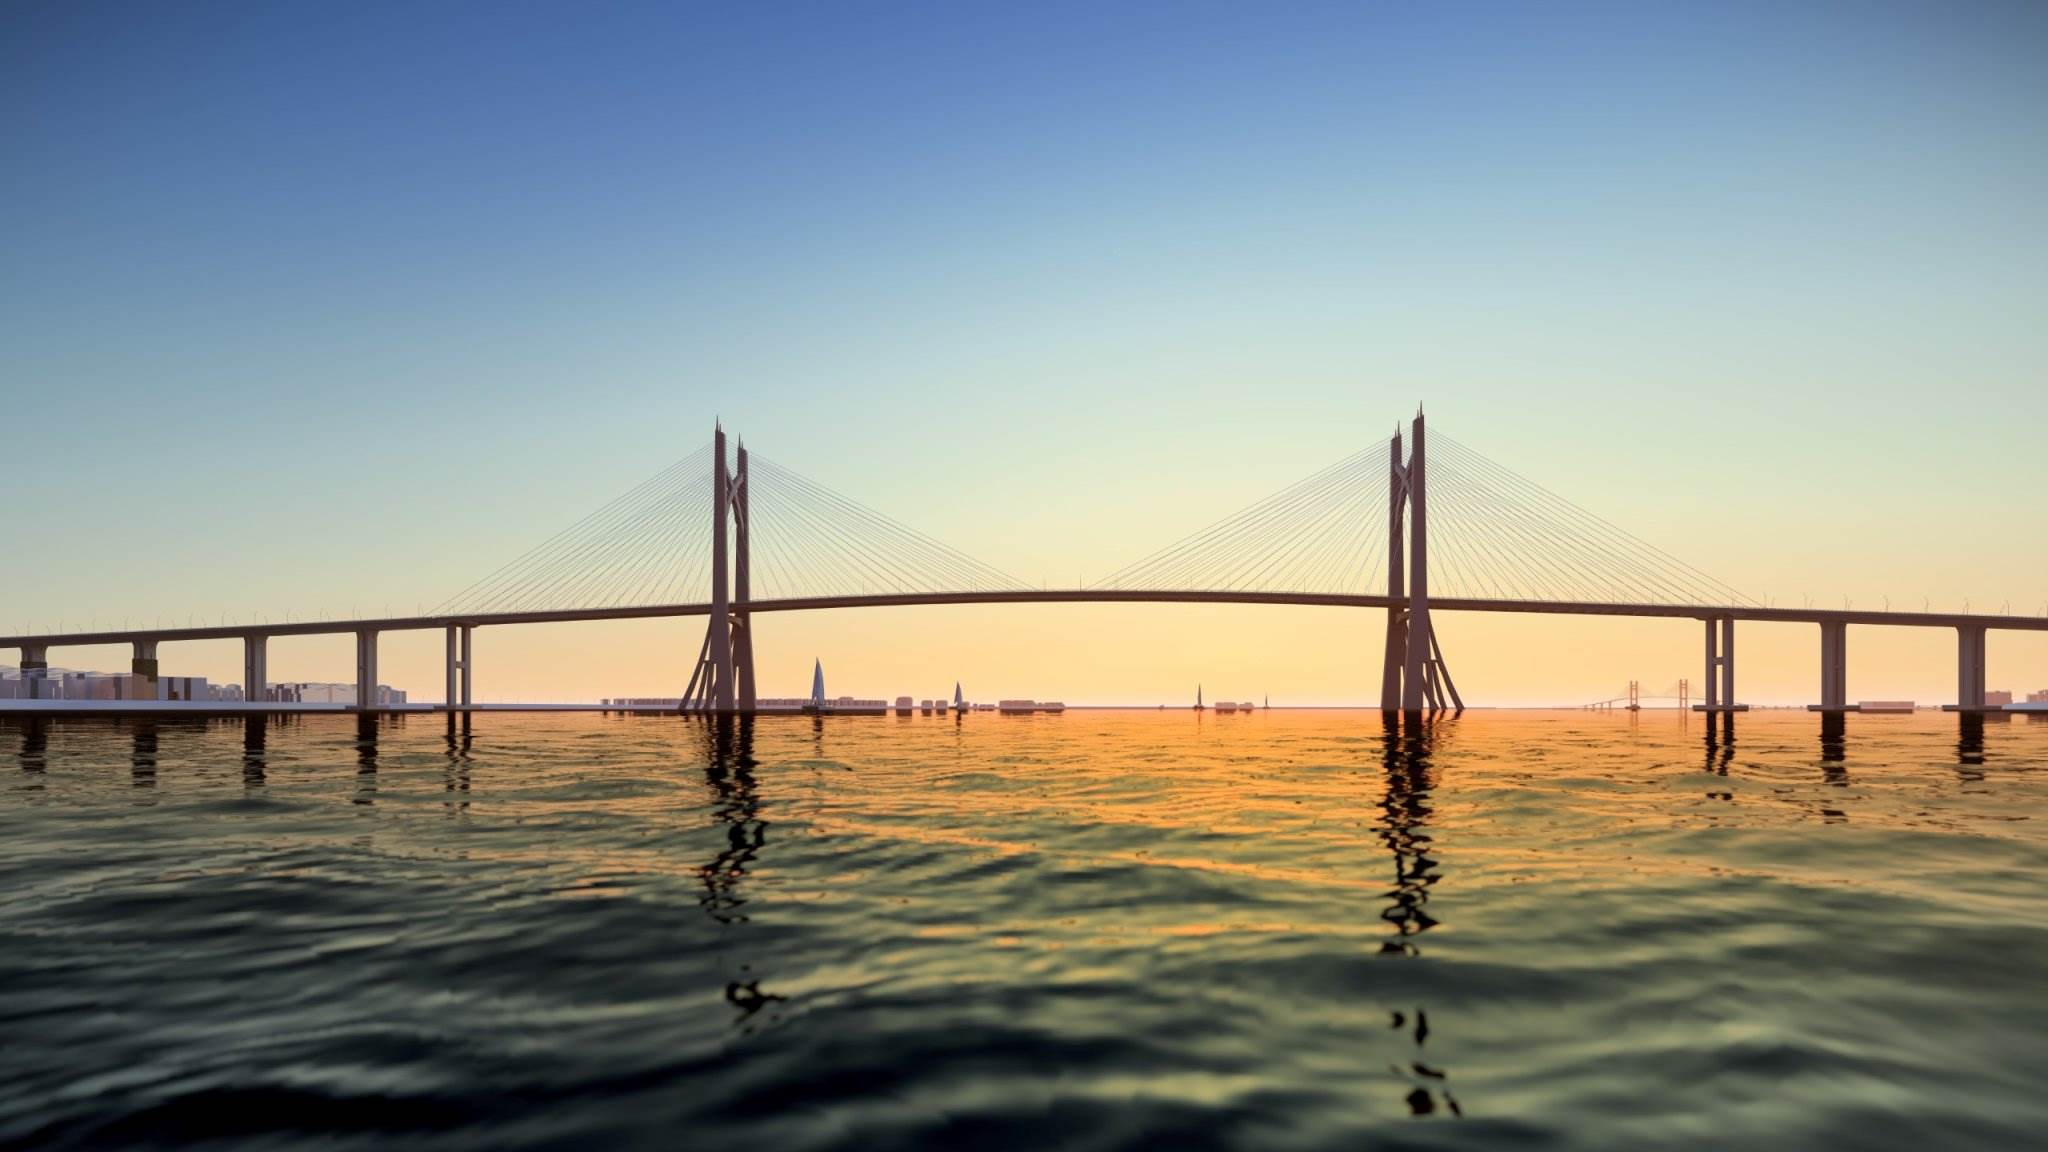 Cầu Cần Giờ được xây dựng theo dạng dây văng, tĩnh không thông thuyền 55m (tương đương cầu Bình Khánh của dự án cao tốc Bến Lức - Long Thành) - cao nhất Việt Nam thời điểm hiện tại. Cầu Cần Giờ cũng sẽ là cầu dây văng lớn nhất TPHCM.